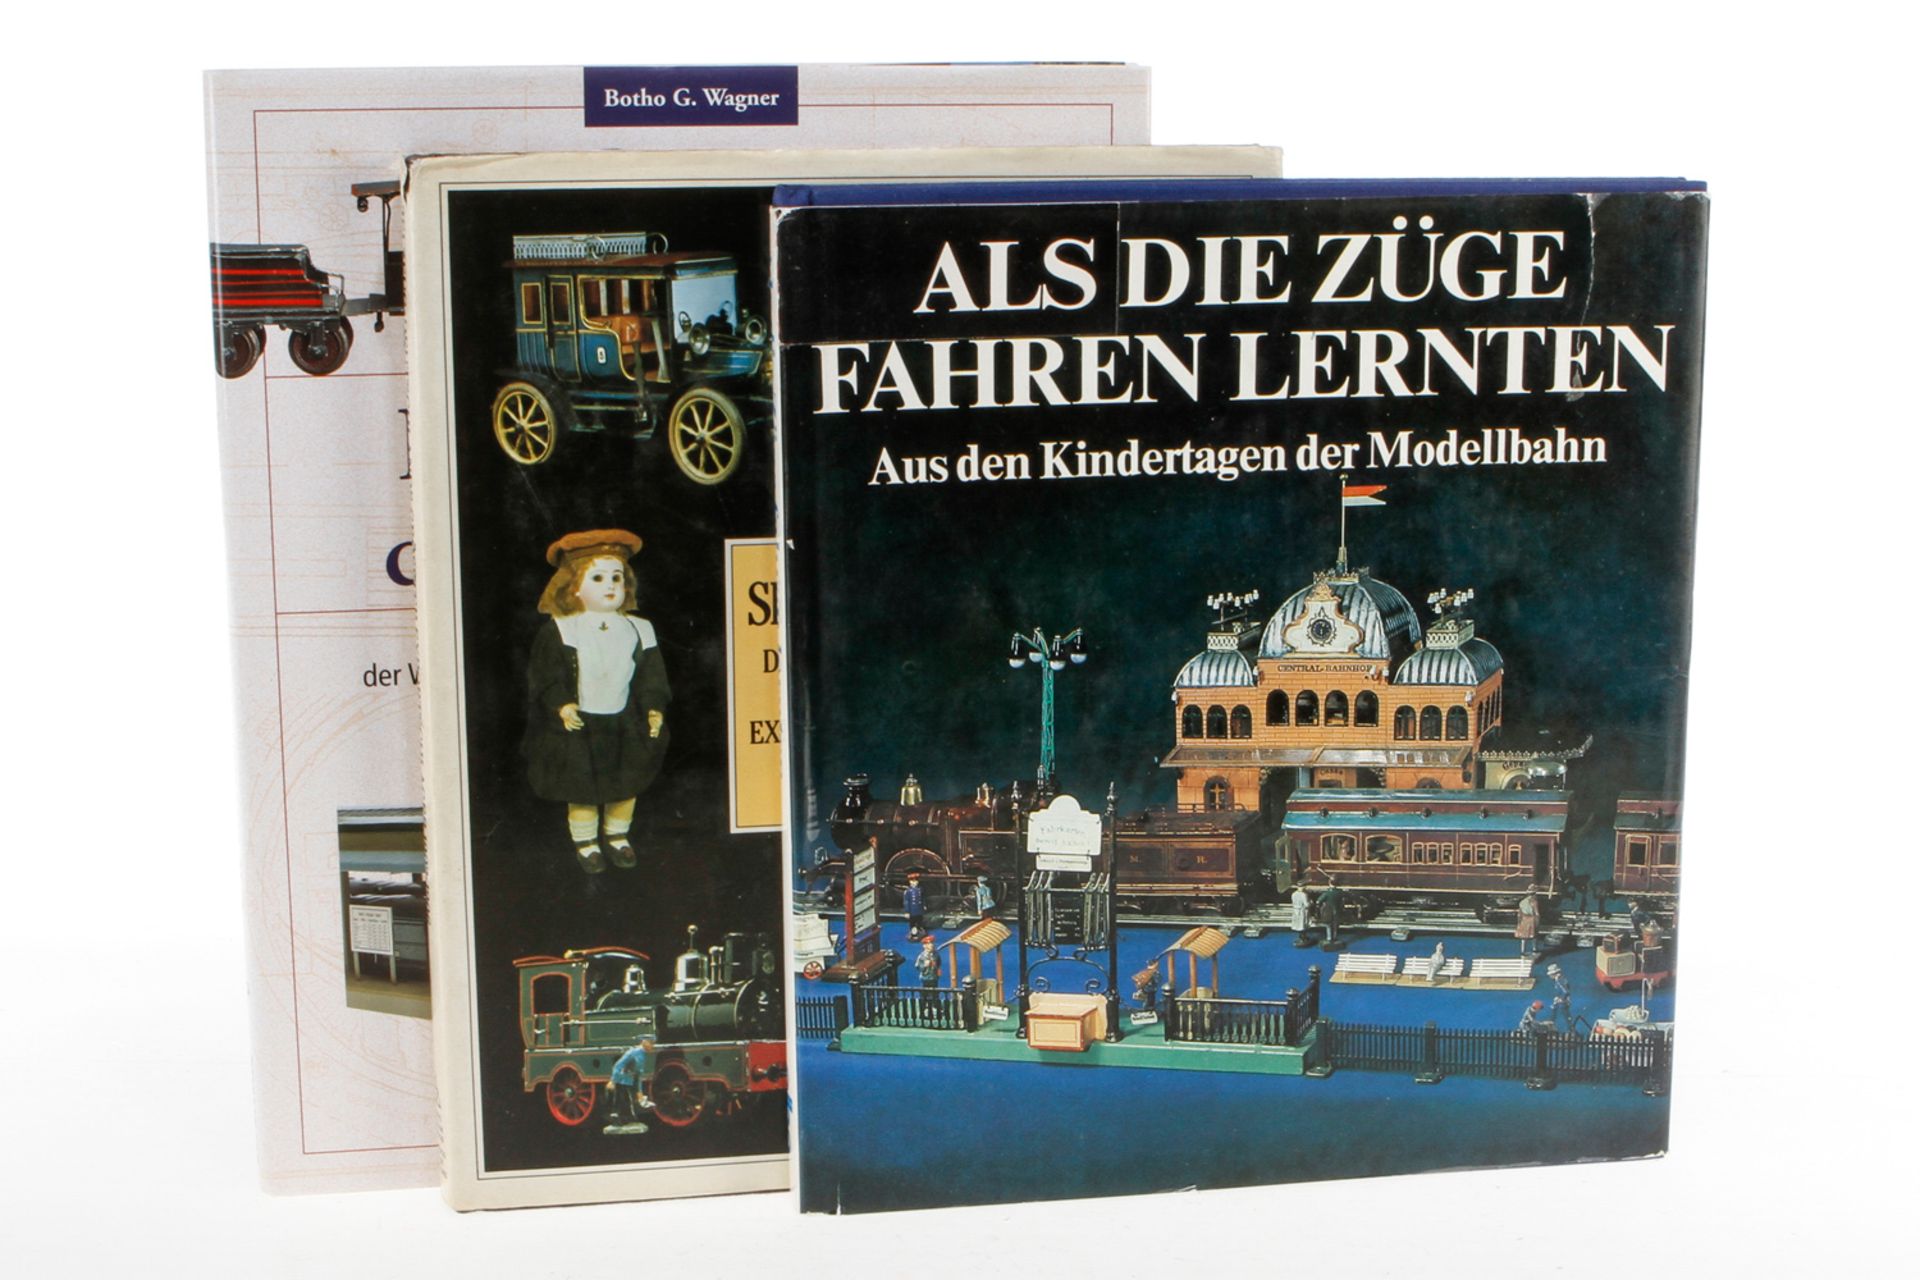 3 Bücher "Als die Züge fahren lernten", "Spielzeug" und "Die Geschichte der Modellbahn",